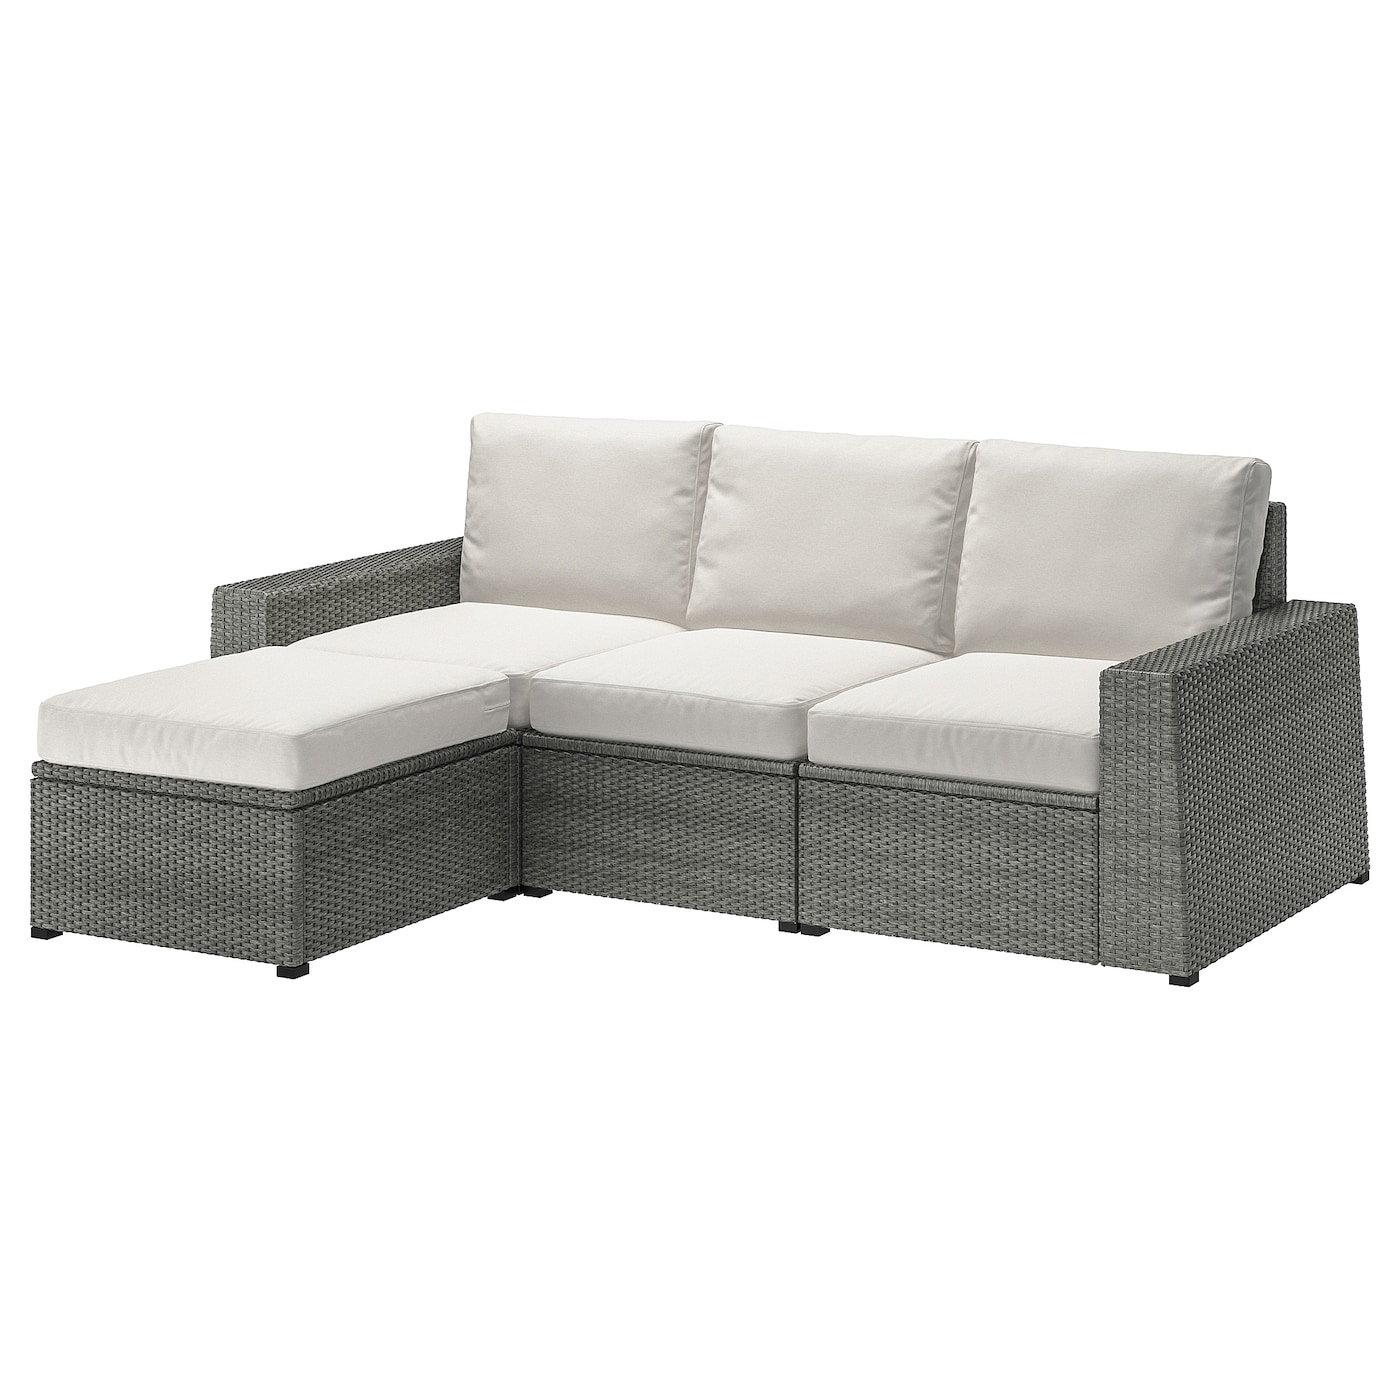 3-местный модульный диван - IKEA SOLLERÖN, 88x144x223см, бежевый/темно-серый, СОЛЛЕРОН ИКЕА